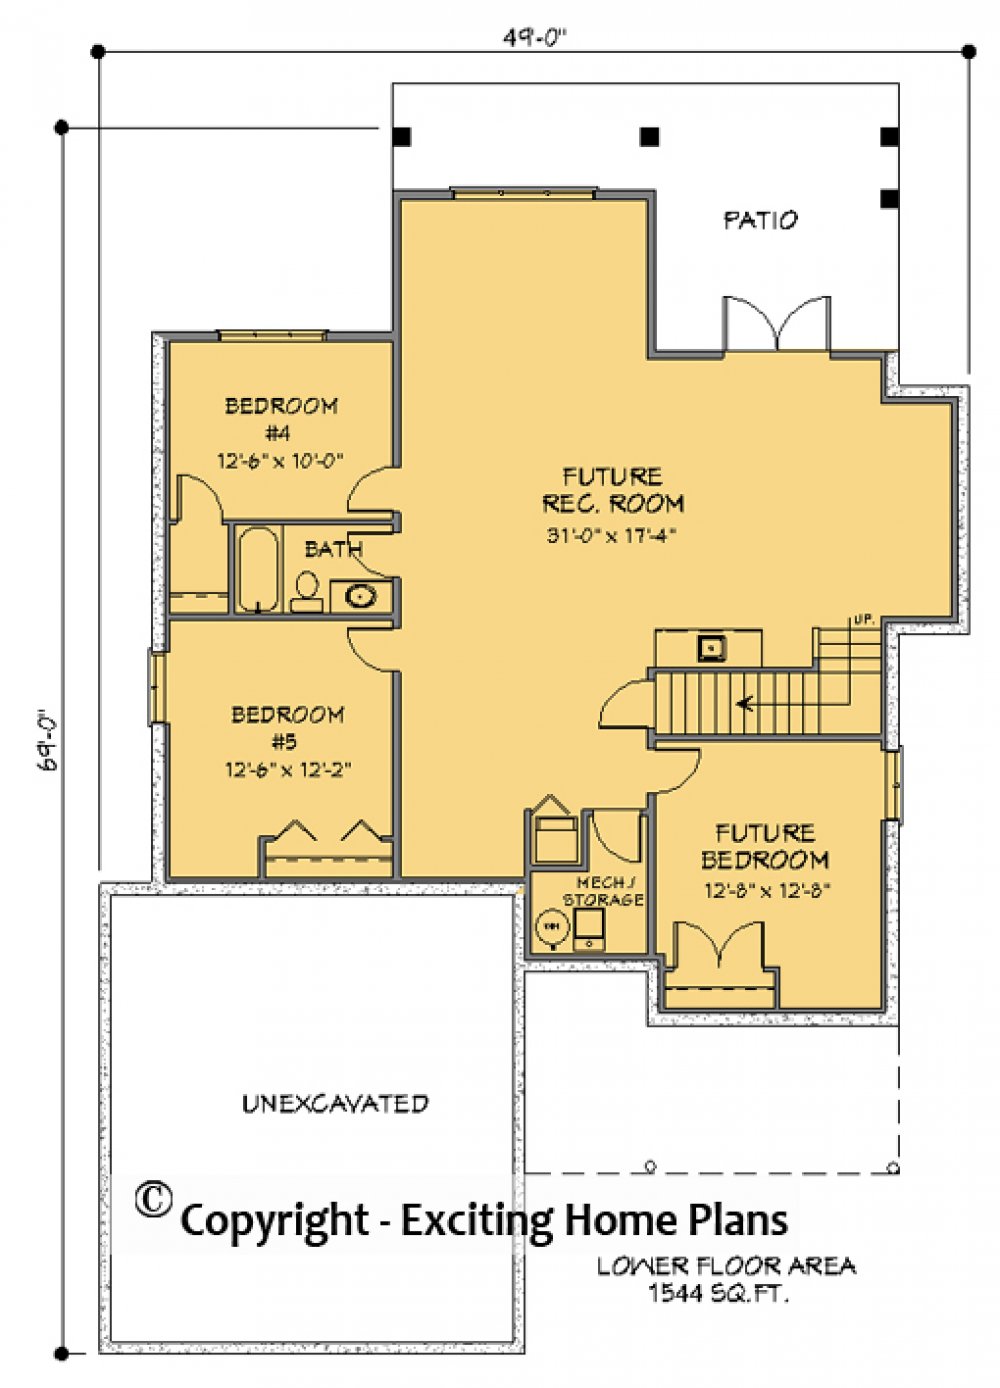 House Plan E1286-10 Lower Floor